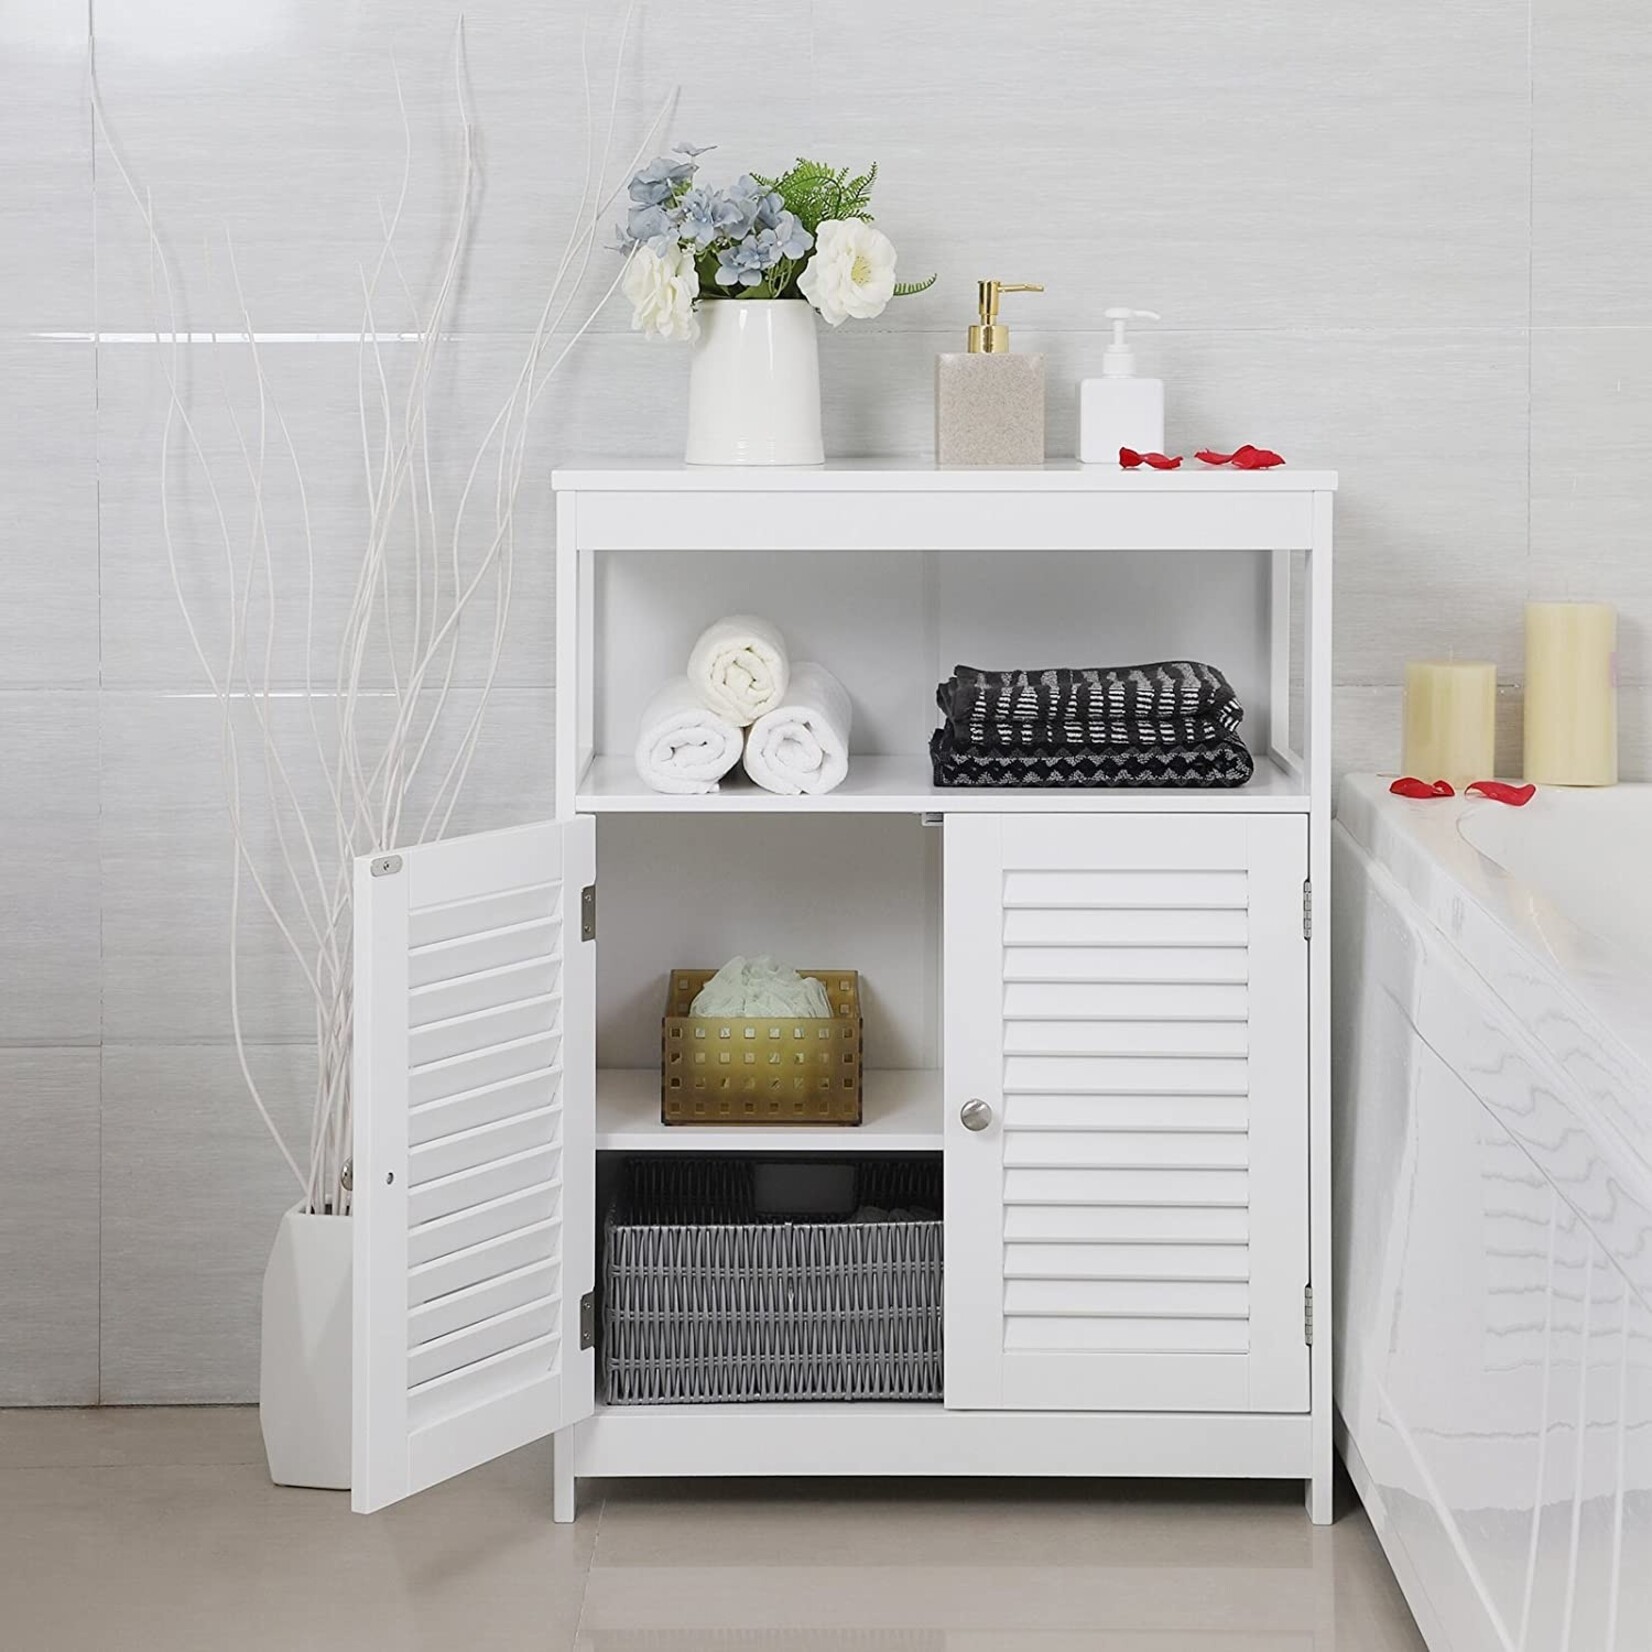 Bobbel Home Bobbel Home - White Bathroom Cabinet - Includes 2 Slat Doors - Rustic - MDF